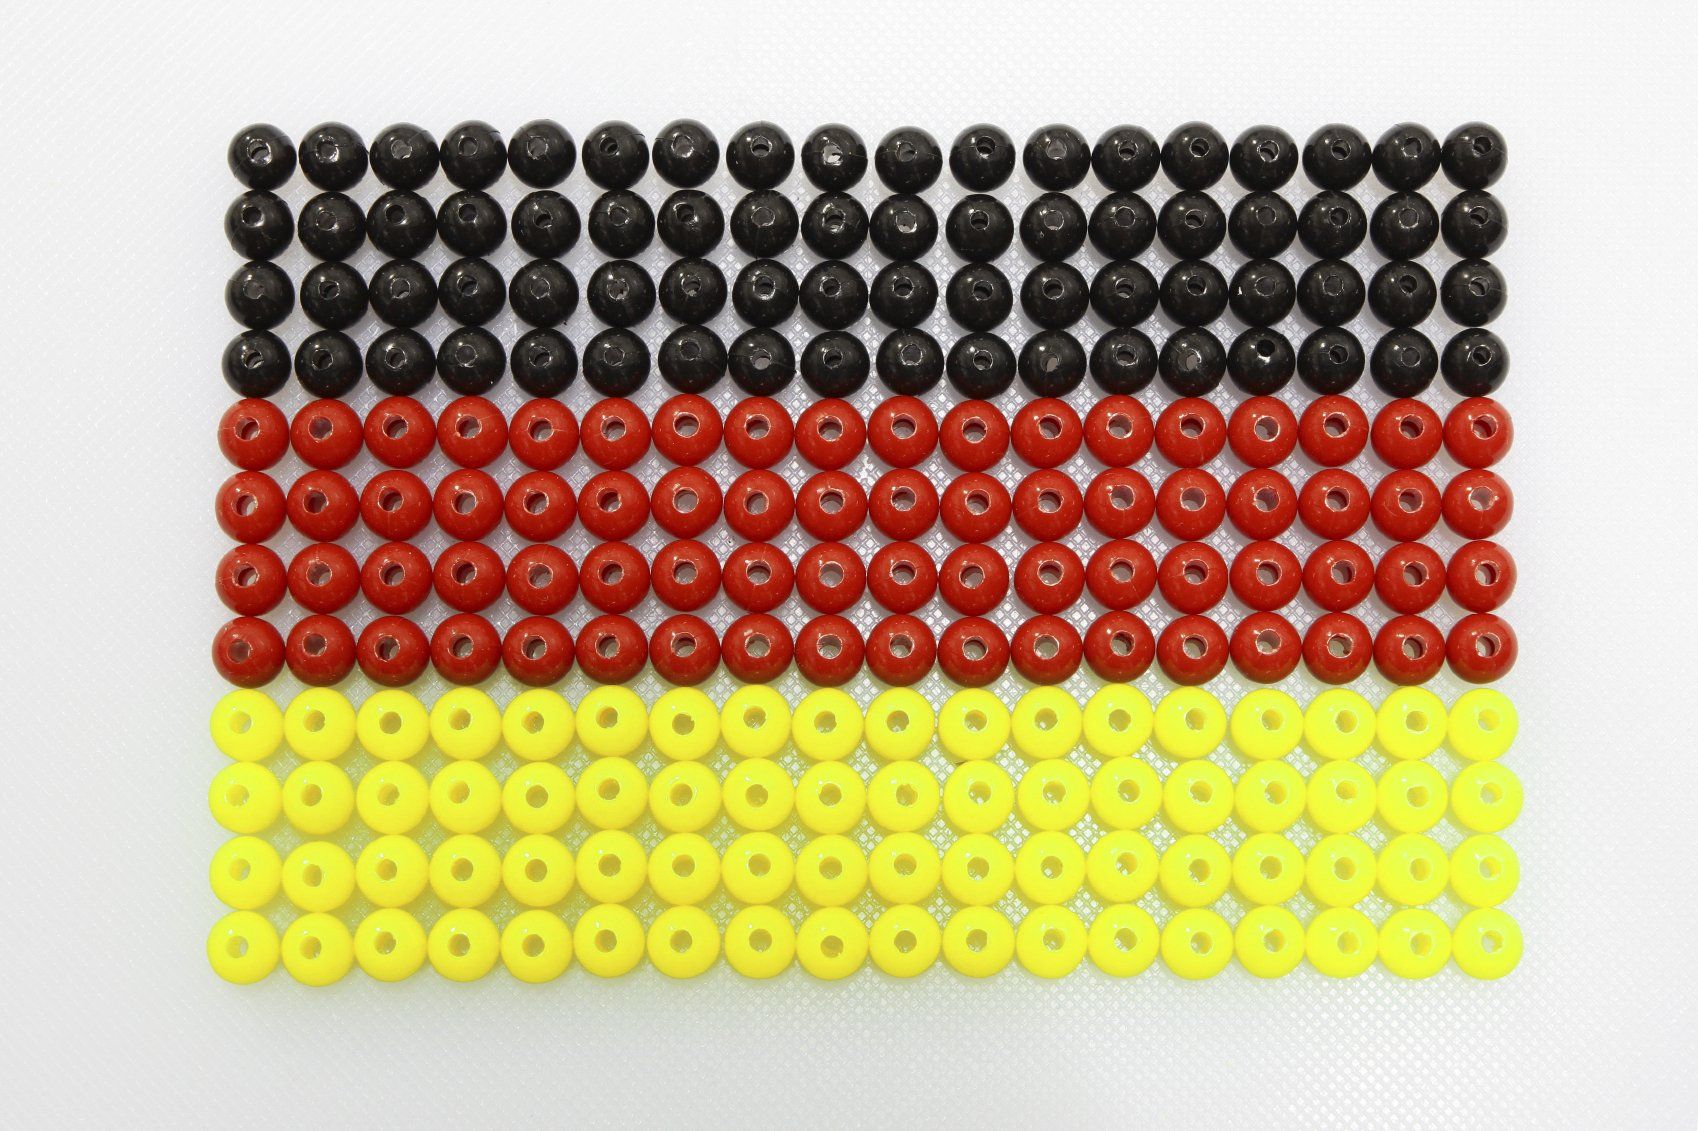 Flaga Niemiec